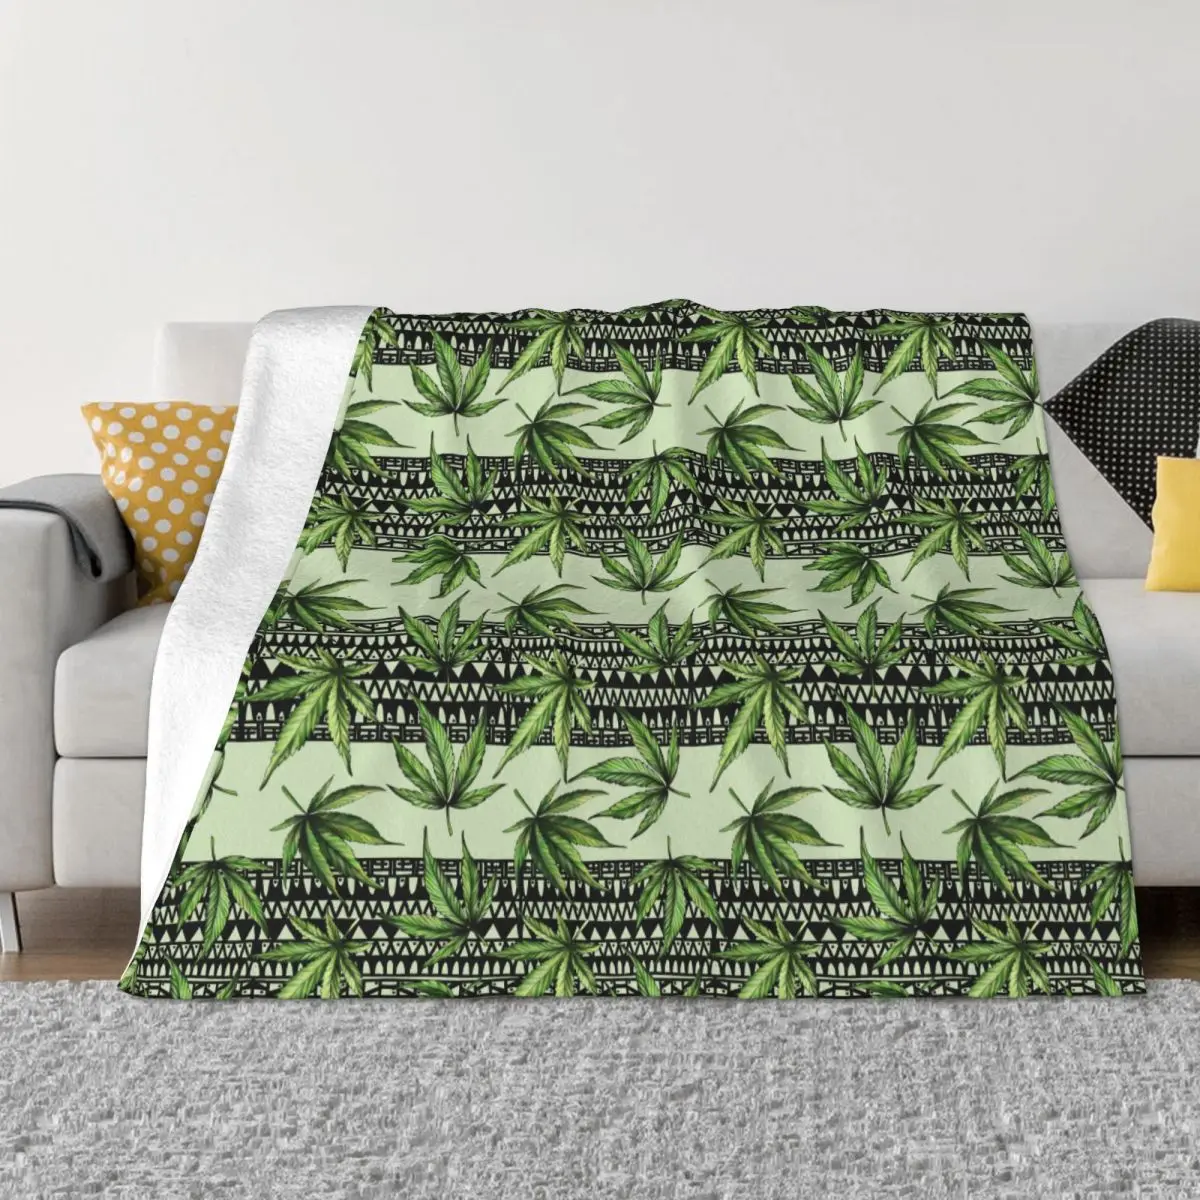 

Фланелевое Одеяло с листьями конопли, многофункциональное теплое покрывало для постельного белья из марихуаны, уличное одеяло, весна-осень